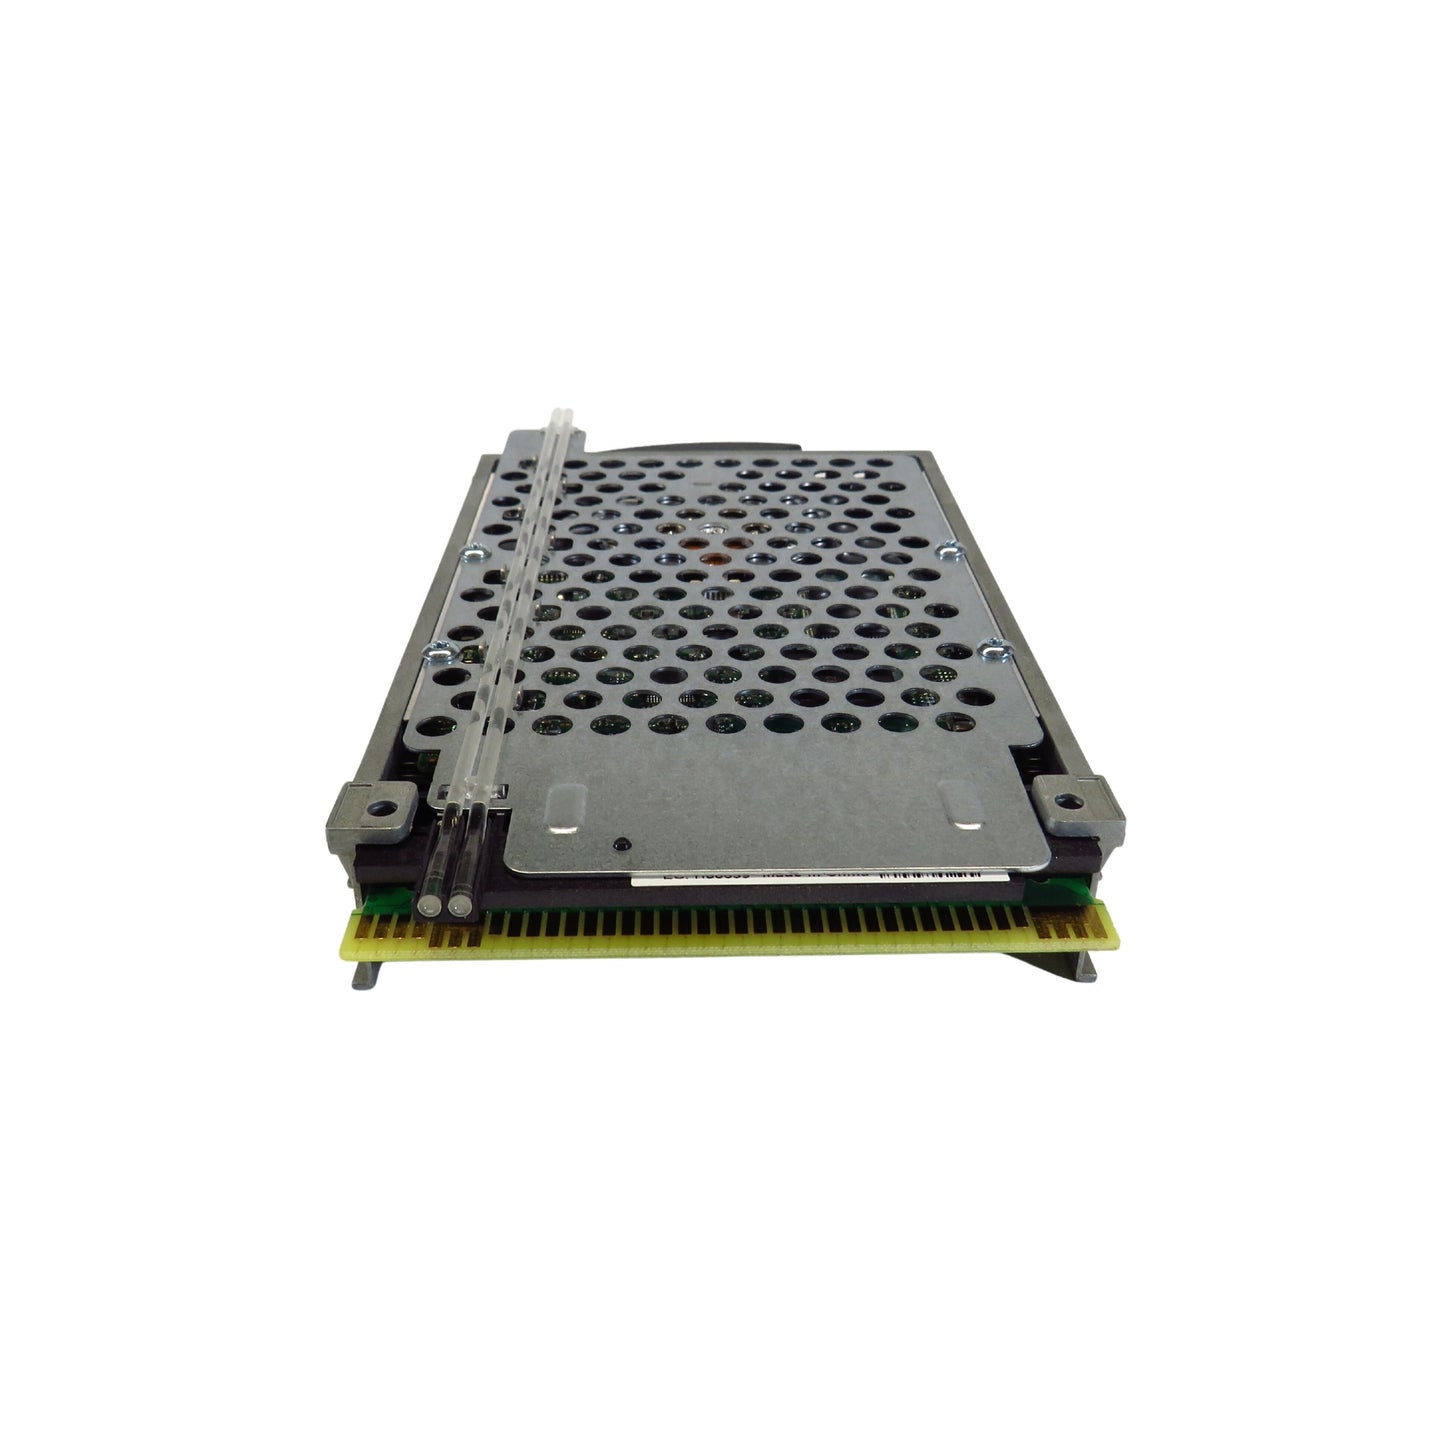 IBM 4328 39J3697 141GB 15K RPM 3.5" U320 SCSI Server HDD Hard Drive w/ Tray (Refurbished)